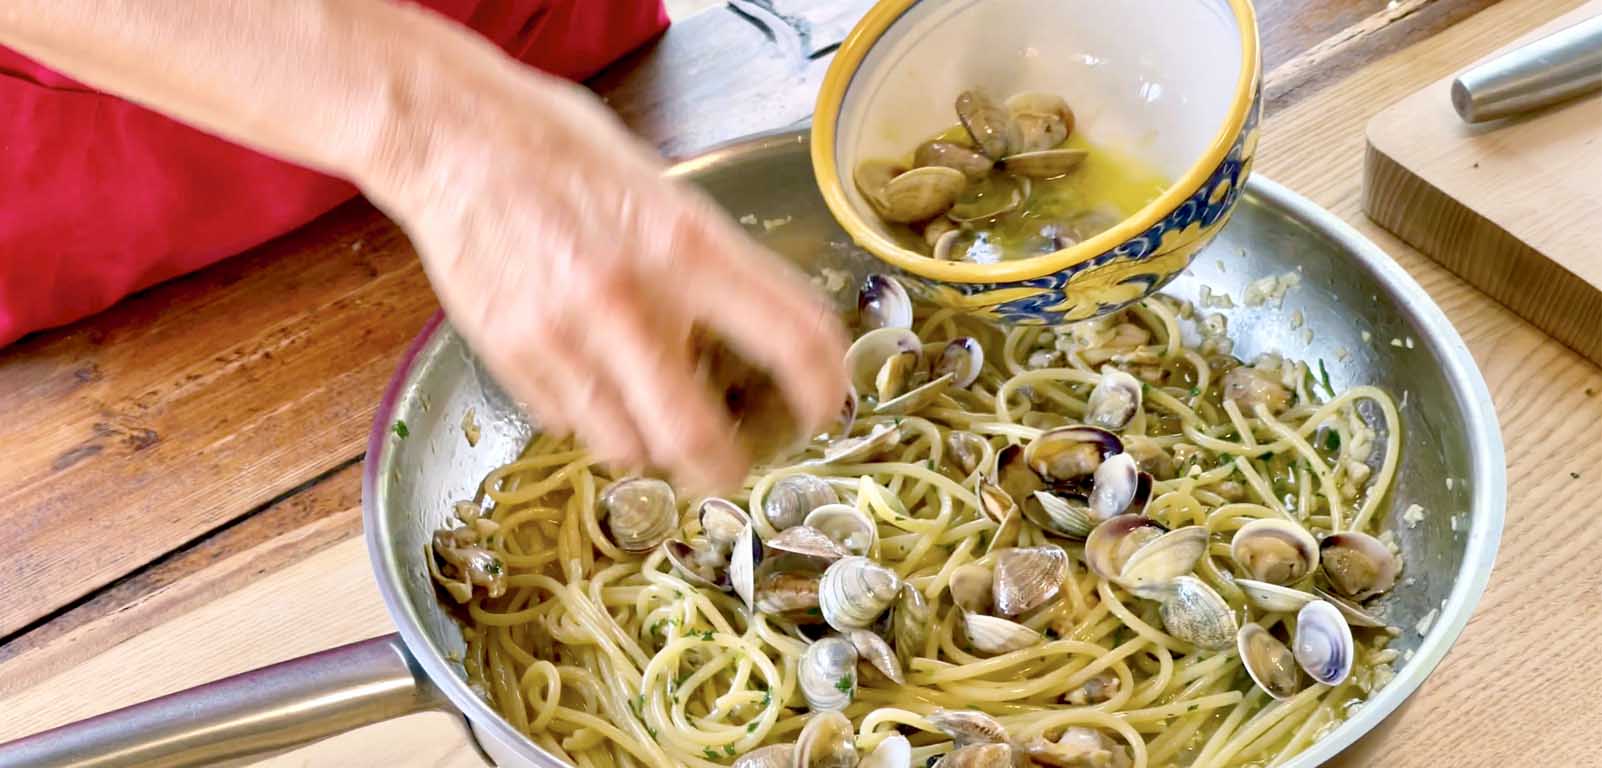 Spaghetti con le vongole - Pasta and clams